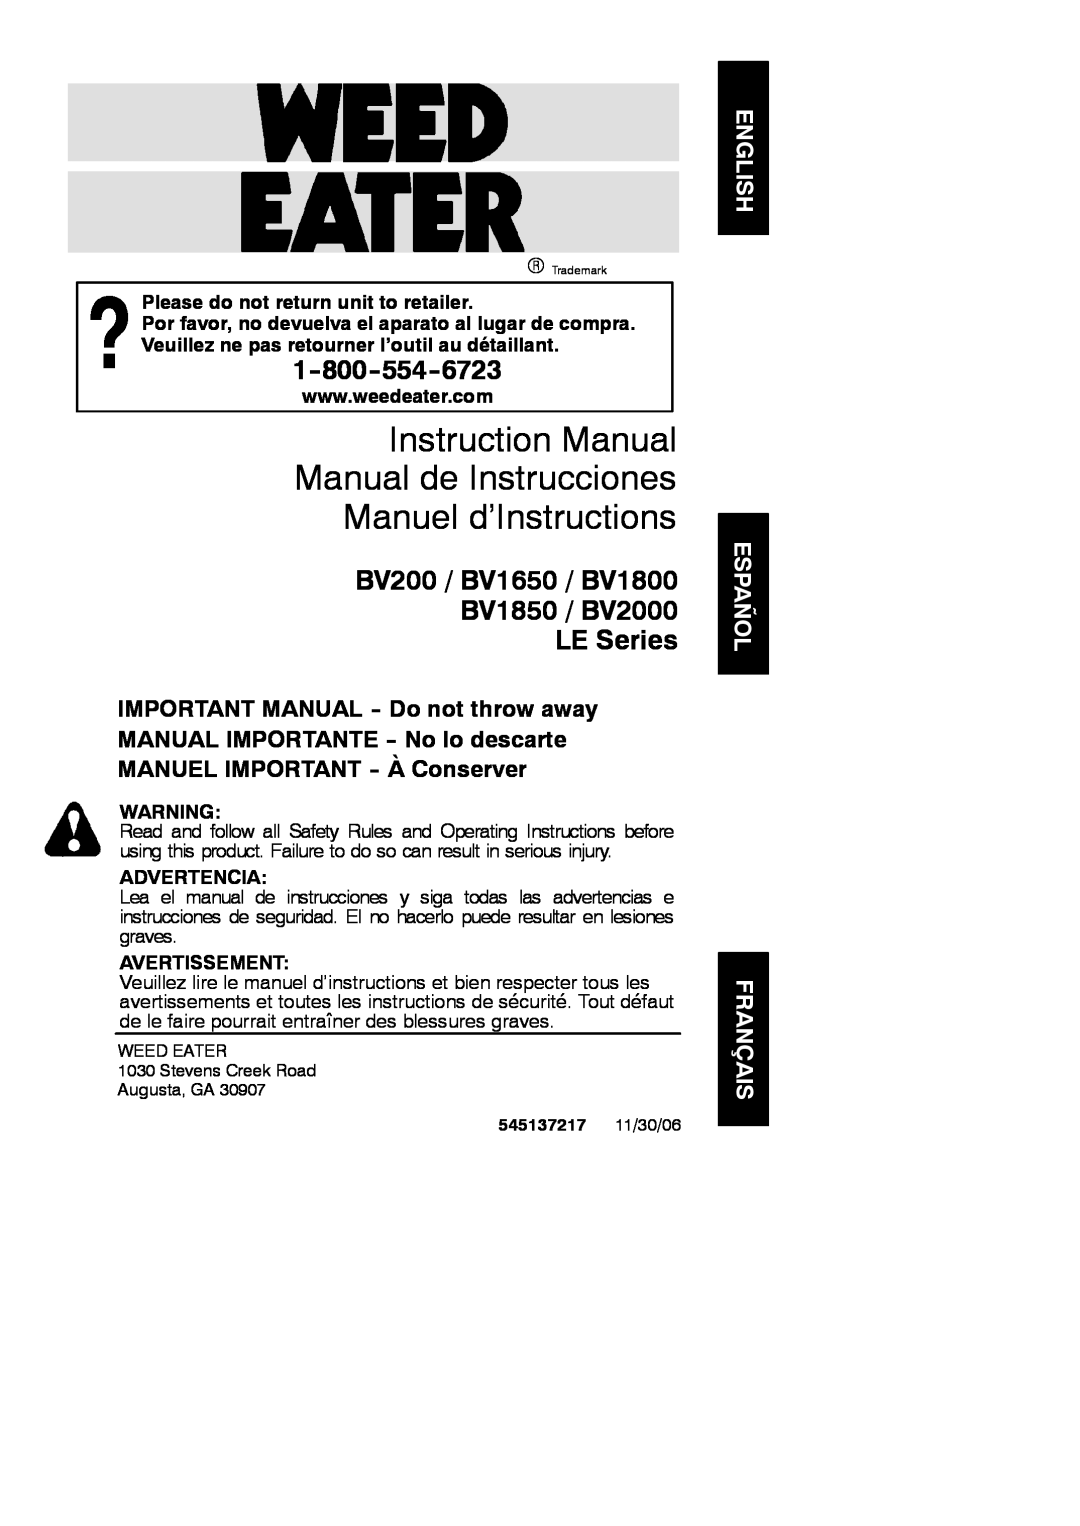 Weed Eater 545137217 instruction manual Manuel d’Instructions, BV200 / BV1650 / BV1800 BV1850 / BV2000 LE Series 